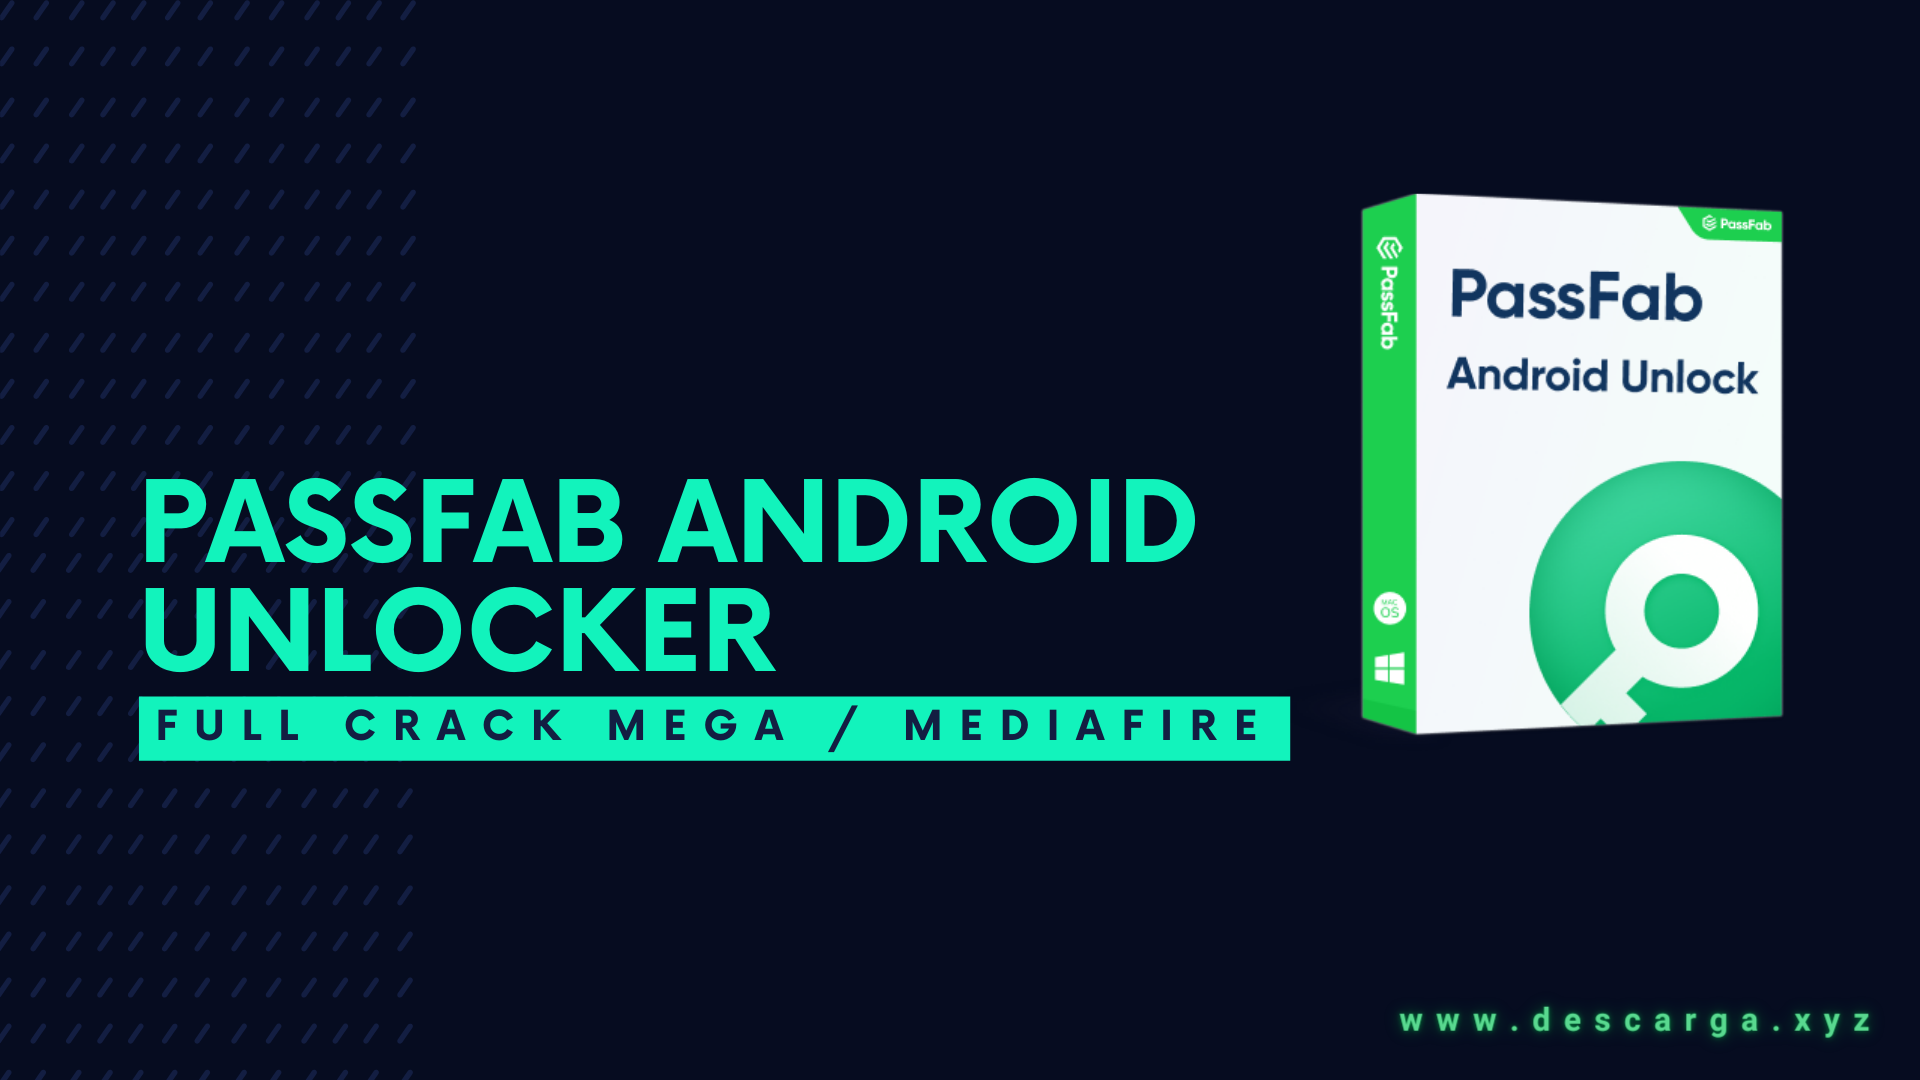 PassFab Android Unlocker Full Crack Descargar Gratis por Mega